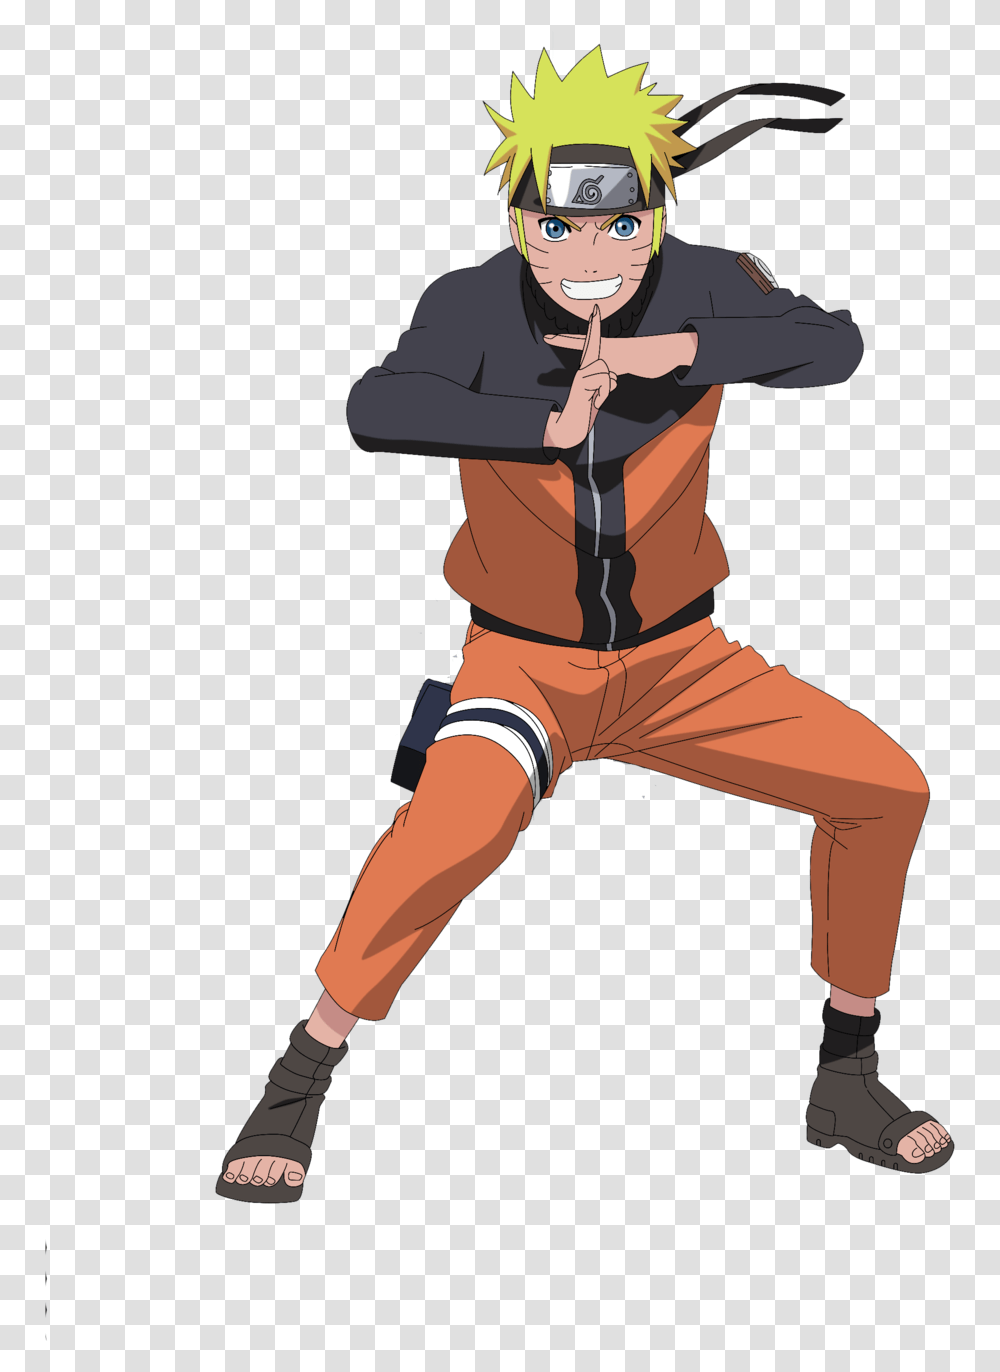 Naruto De Naruto Shippuden Download Naruto Uzumaki Shadow Clone Jutsu, Person, Shorts, Ninja Transparent Png